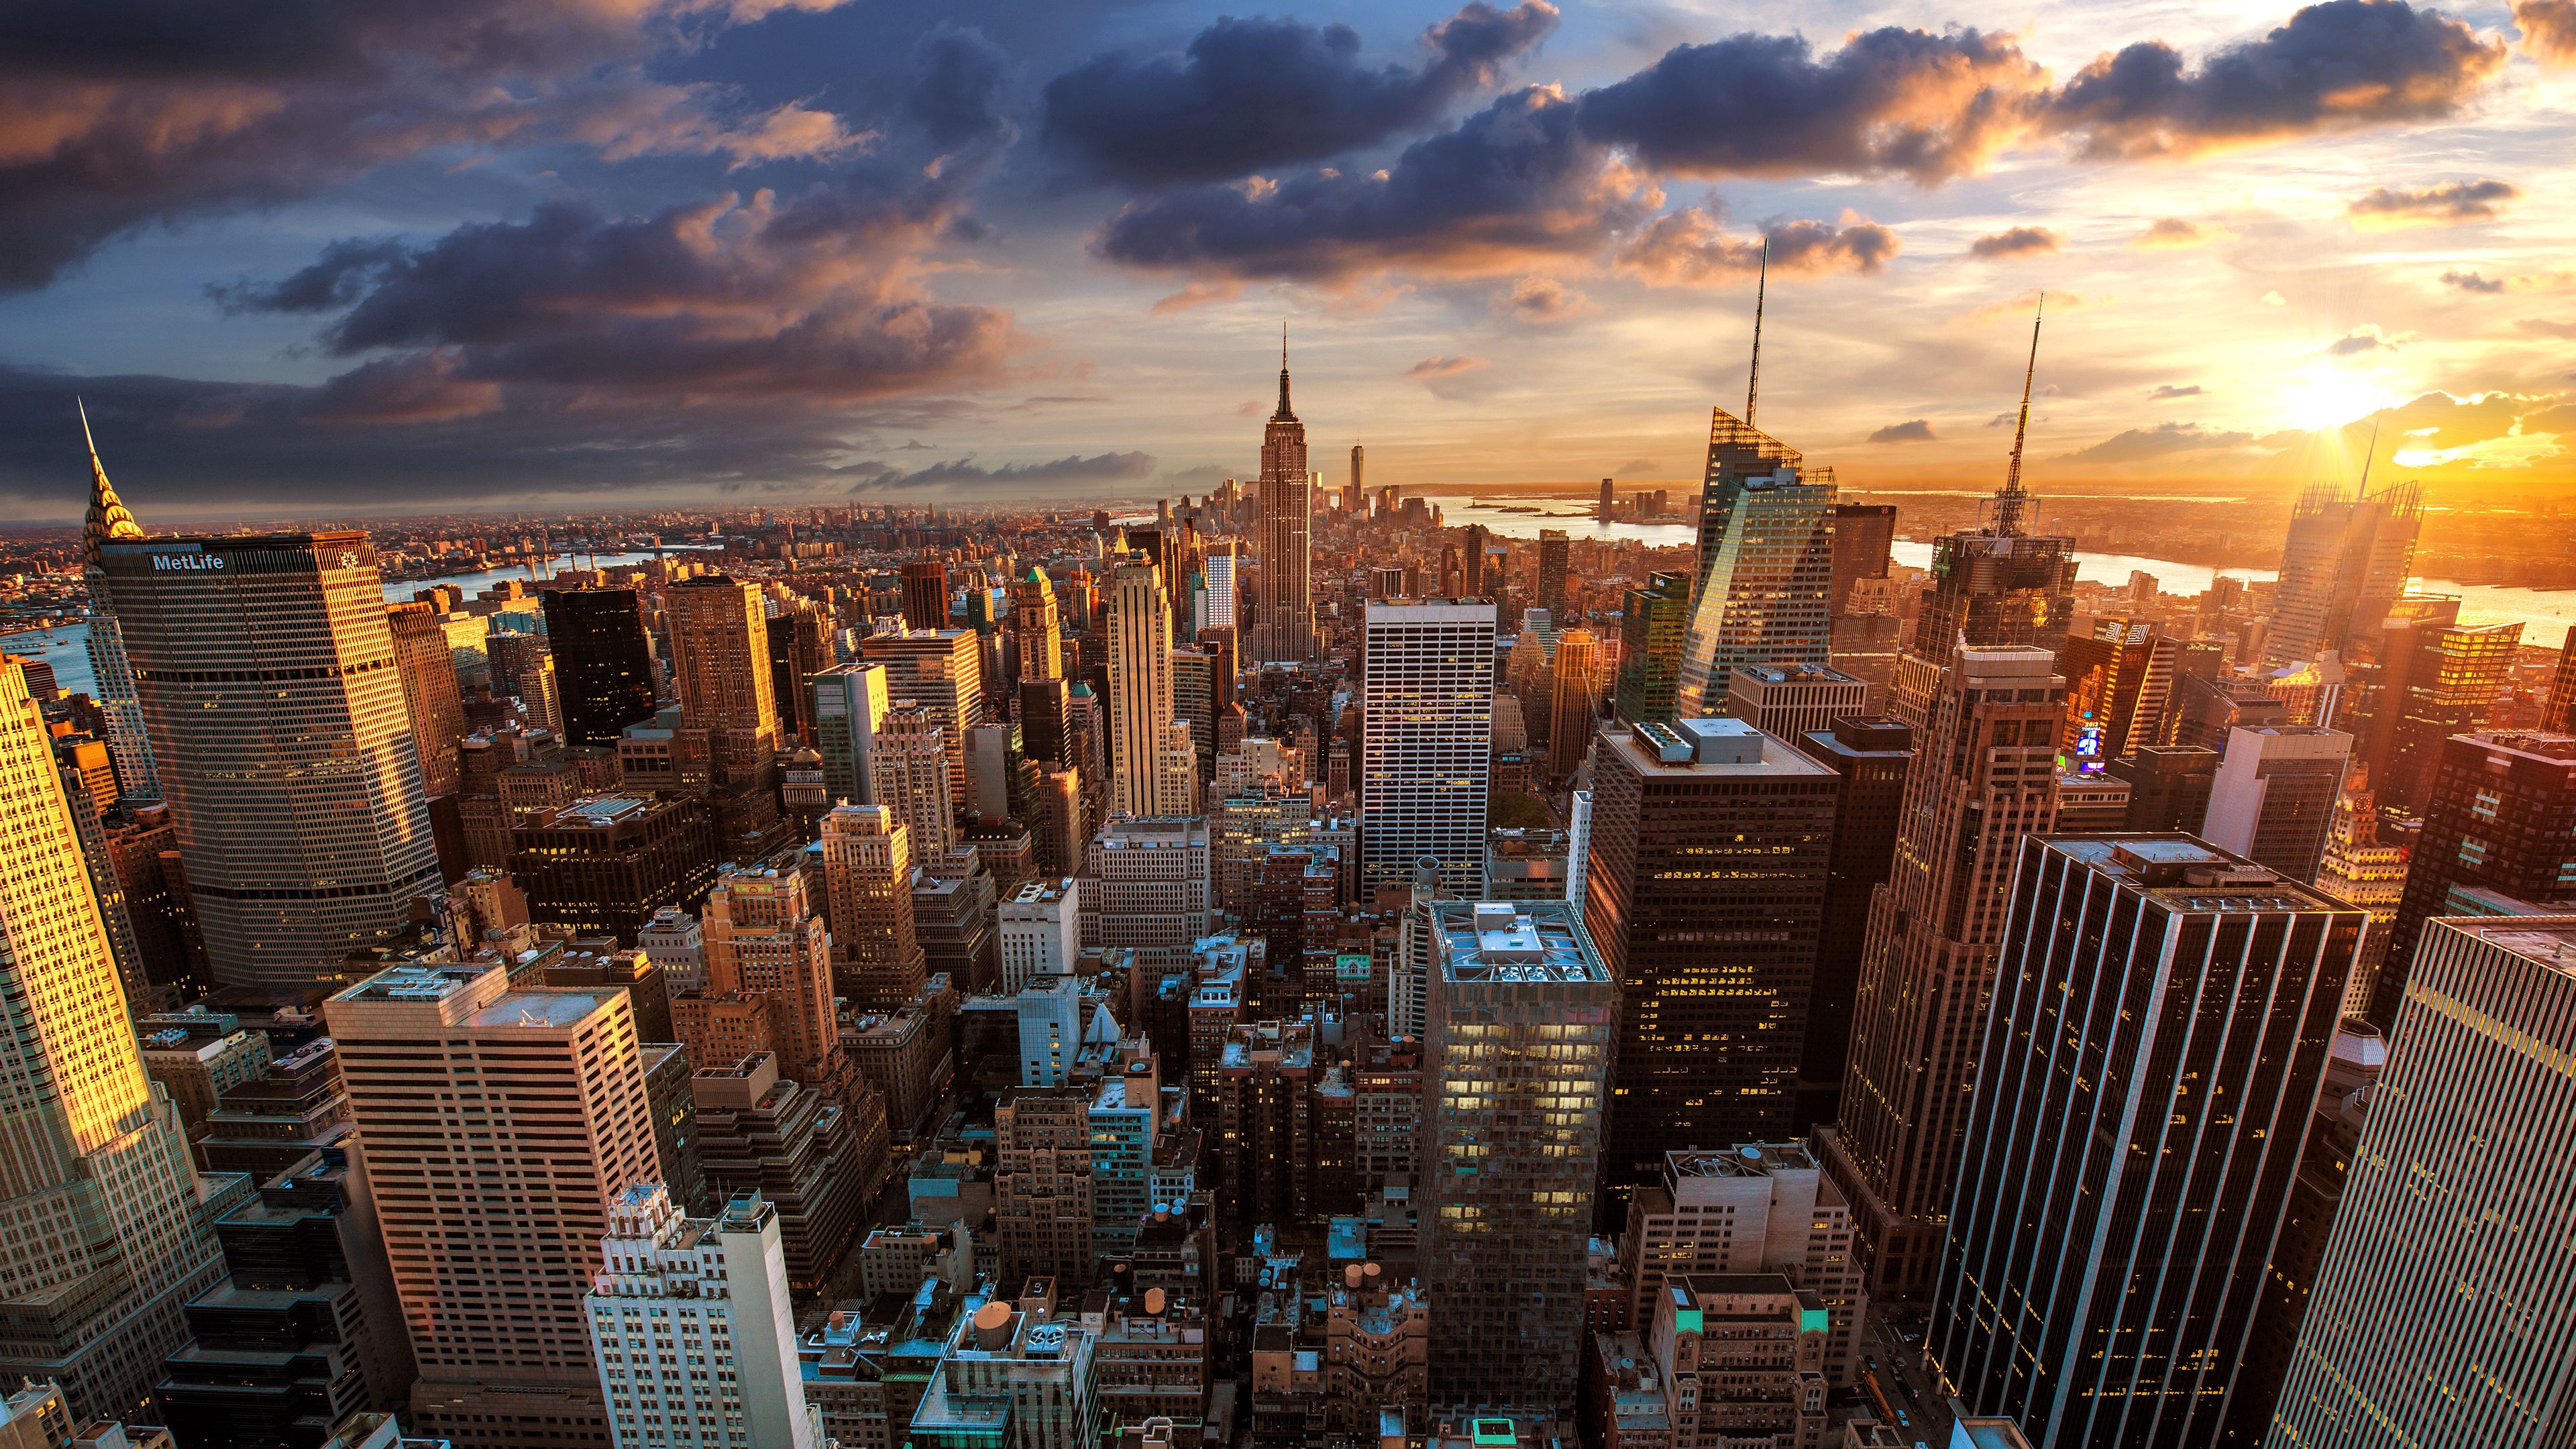 118696 скачать обои города, нью йорк, мегаполис, небоскребы, архитектура, город, вид сверху - заставки и картинки бесплатно